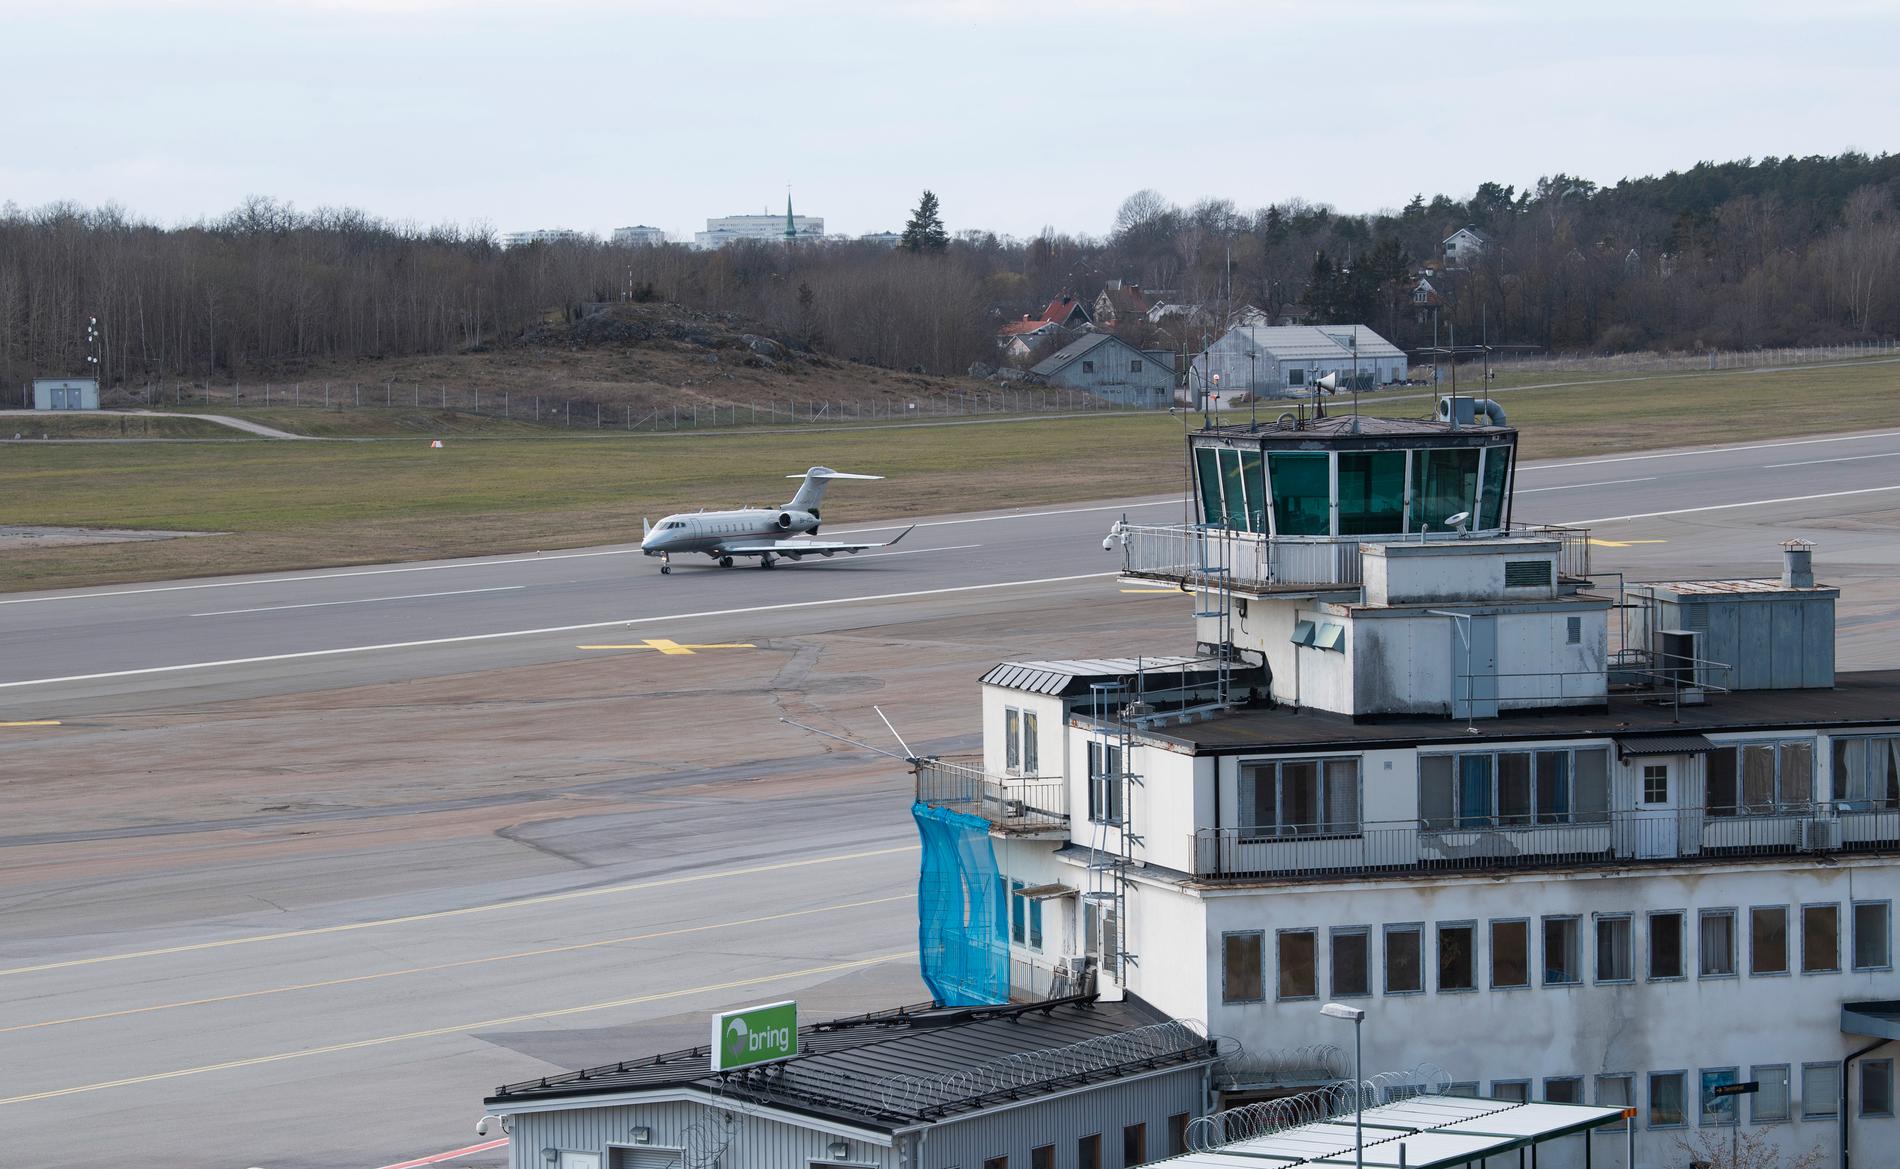 Regeringen kan få mothugg i riksdagen om planen att avveckla Bromma flygplats och flytta till Arlanda. Riksdagen vill ha klara papper om följderna före ett avvecklingsbeslut tas. Arkivbild.